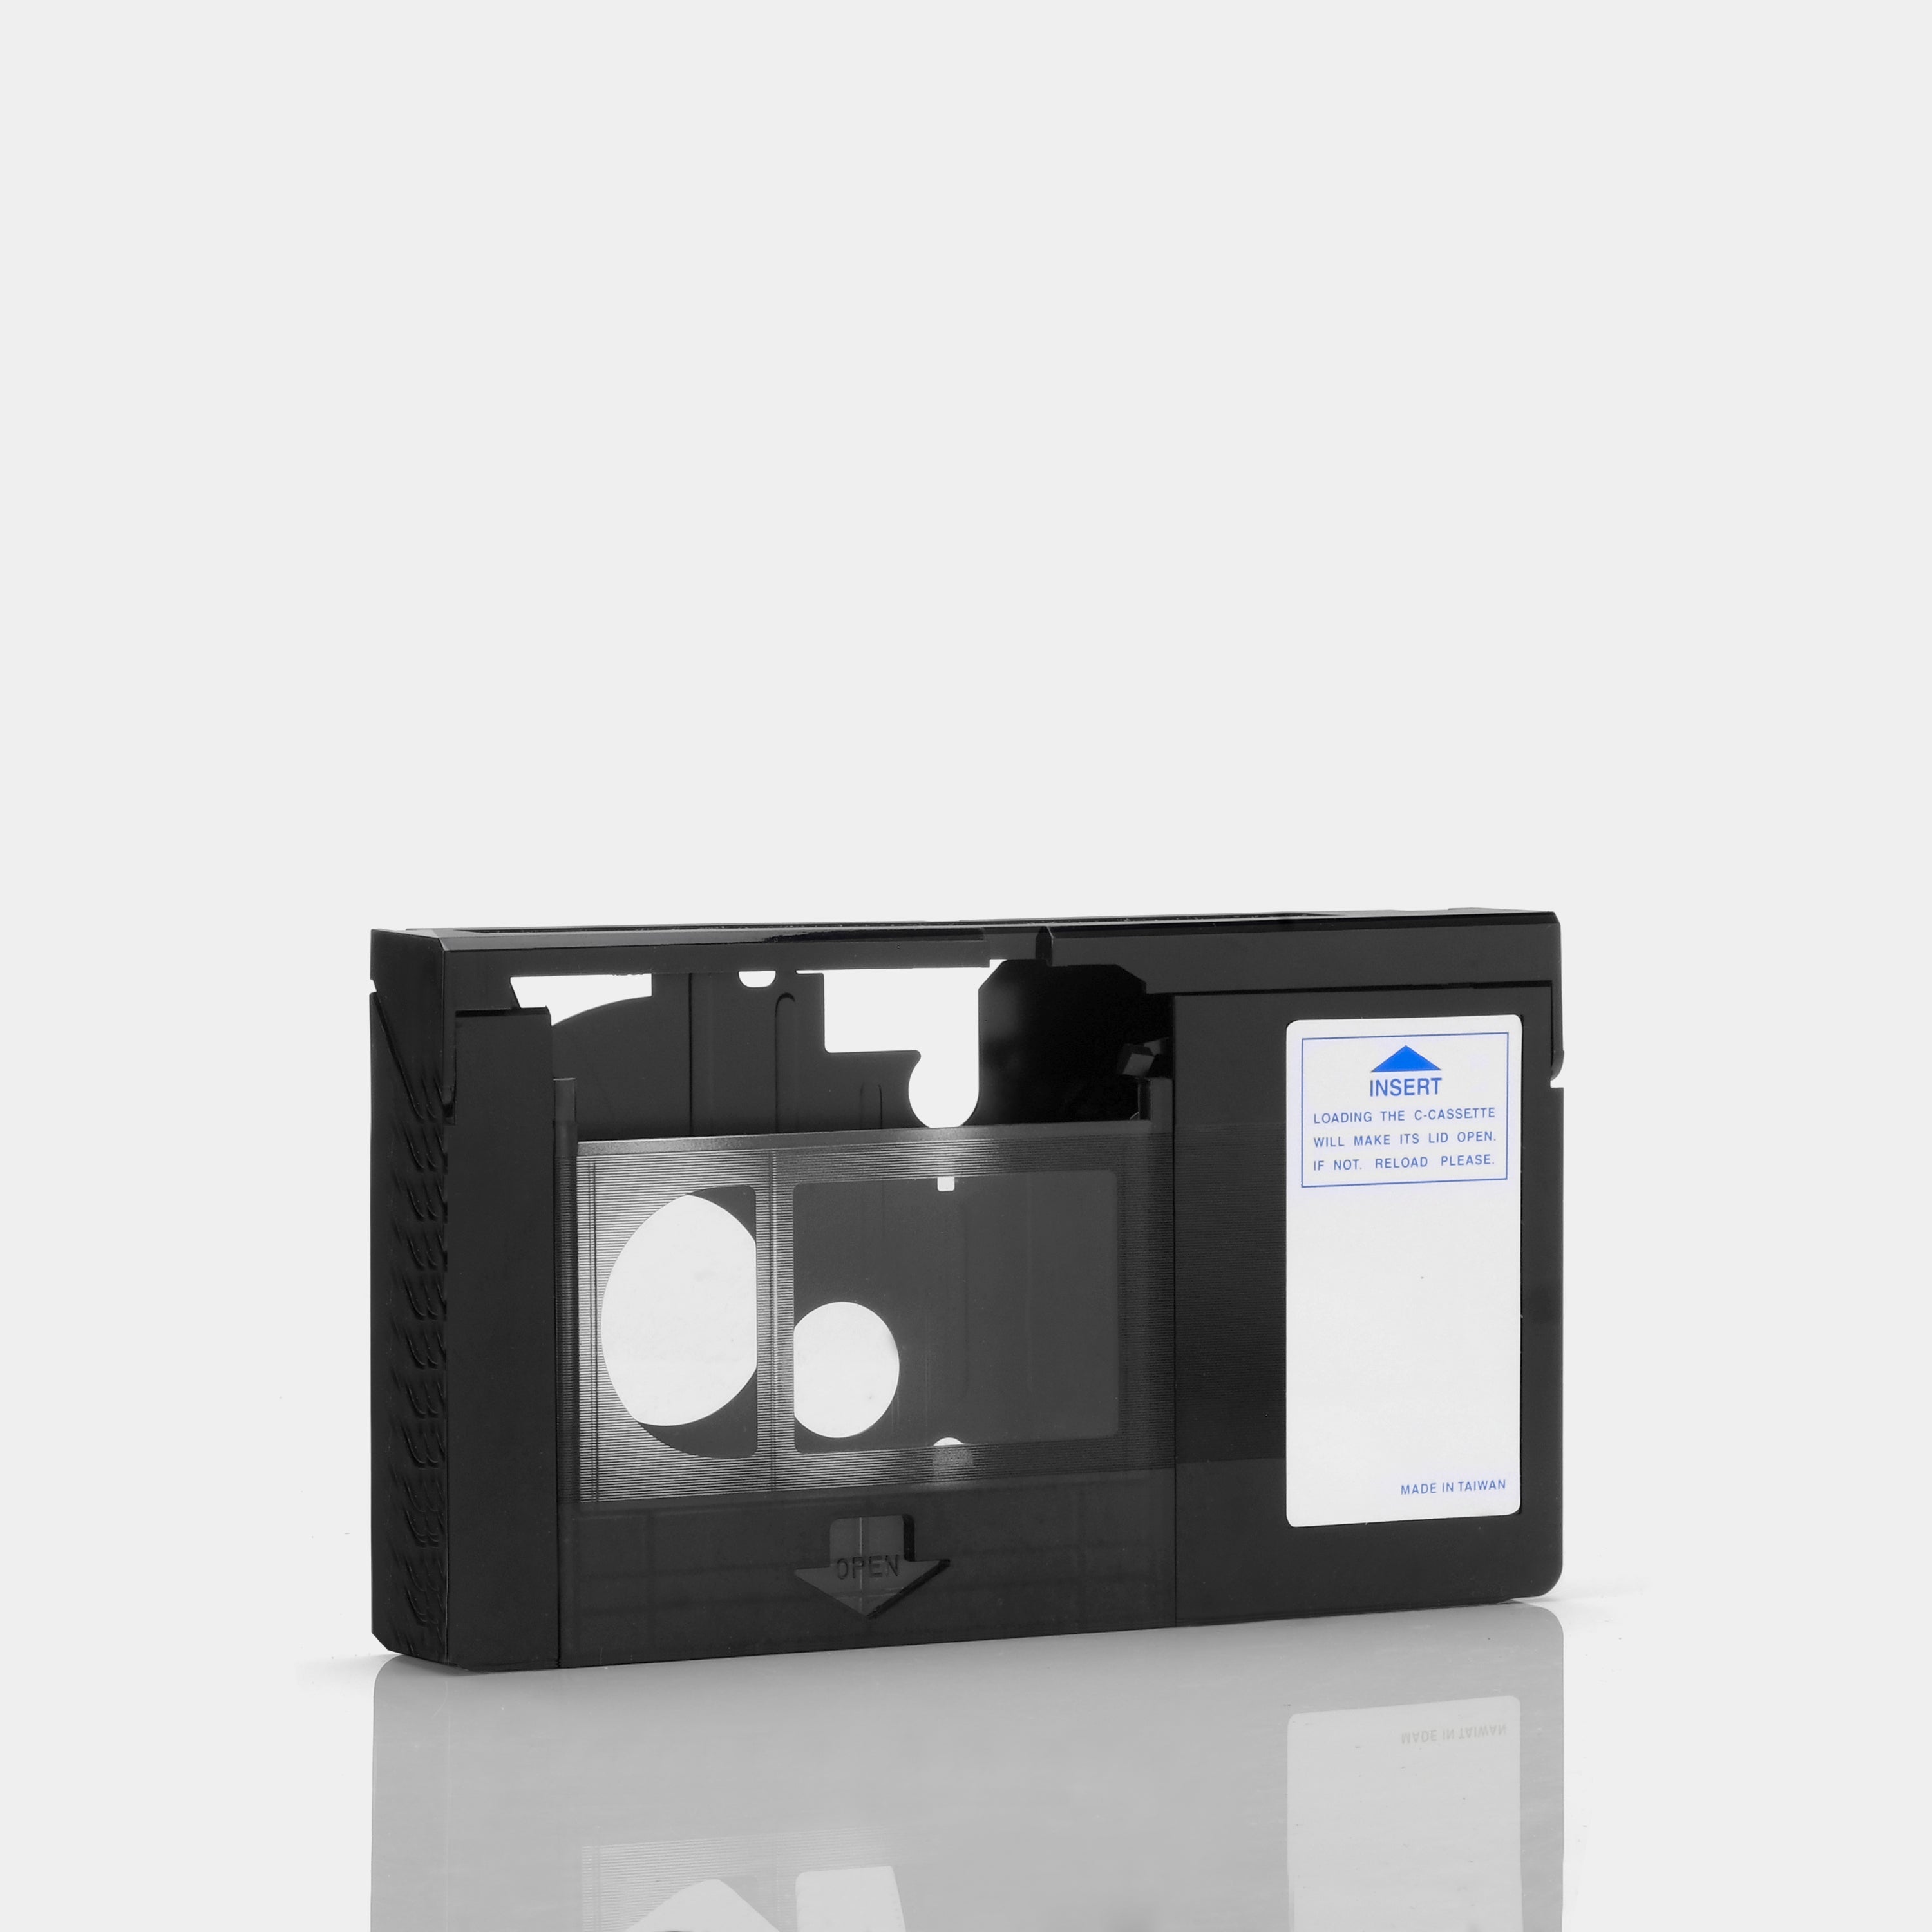 RCA Universal VHS-C Cassette Adapter VCA113